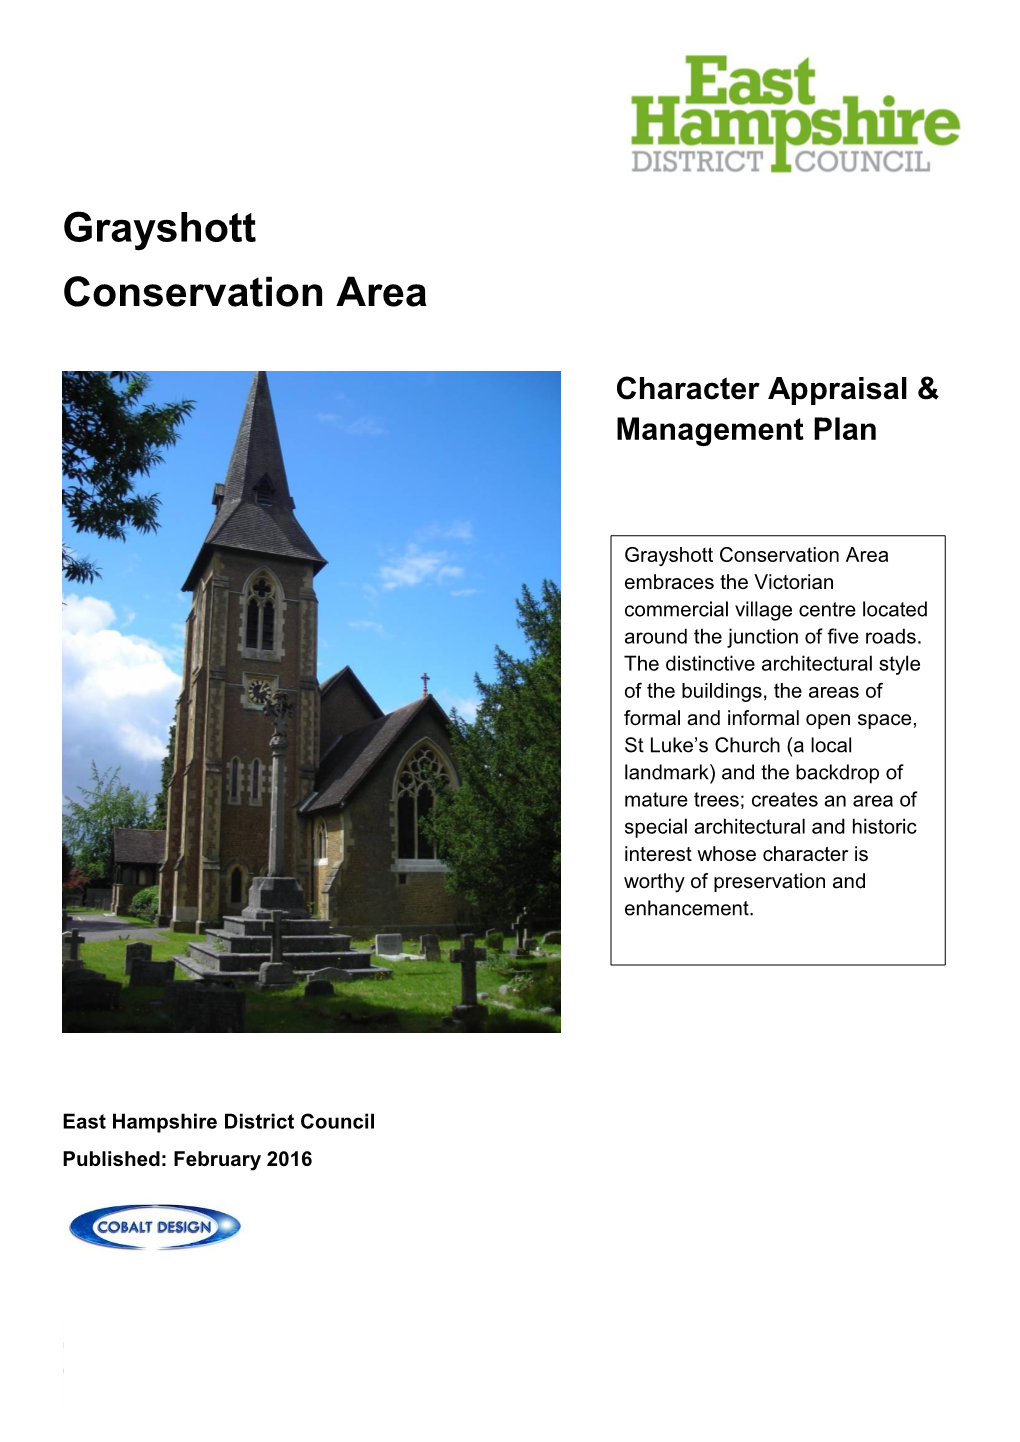 Grayshott Conservation Area